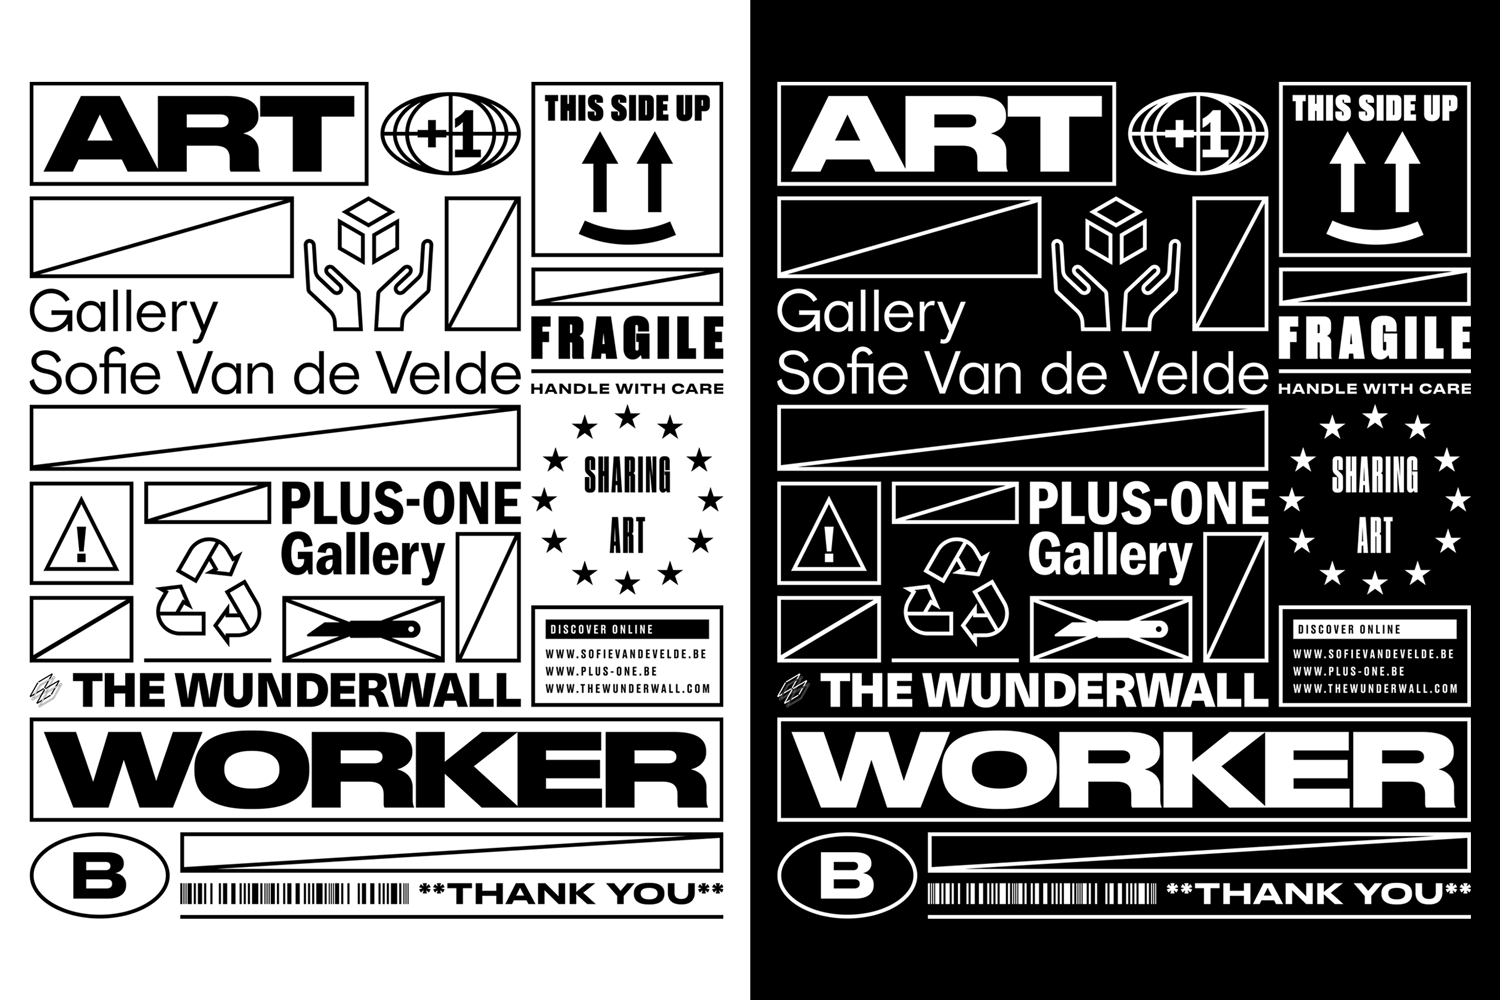 Sharing-Art-BV-Gallery-Sofie-Van-de-Velde-PLUS-ONE-Gallery-The-Wunderwall-Art-Workers-merch-Artist-Proof-Studio-Thomas-De-Ben-2.png